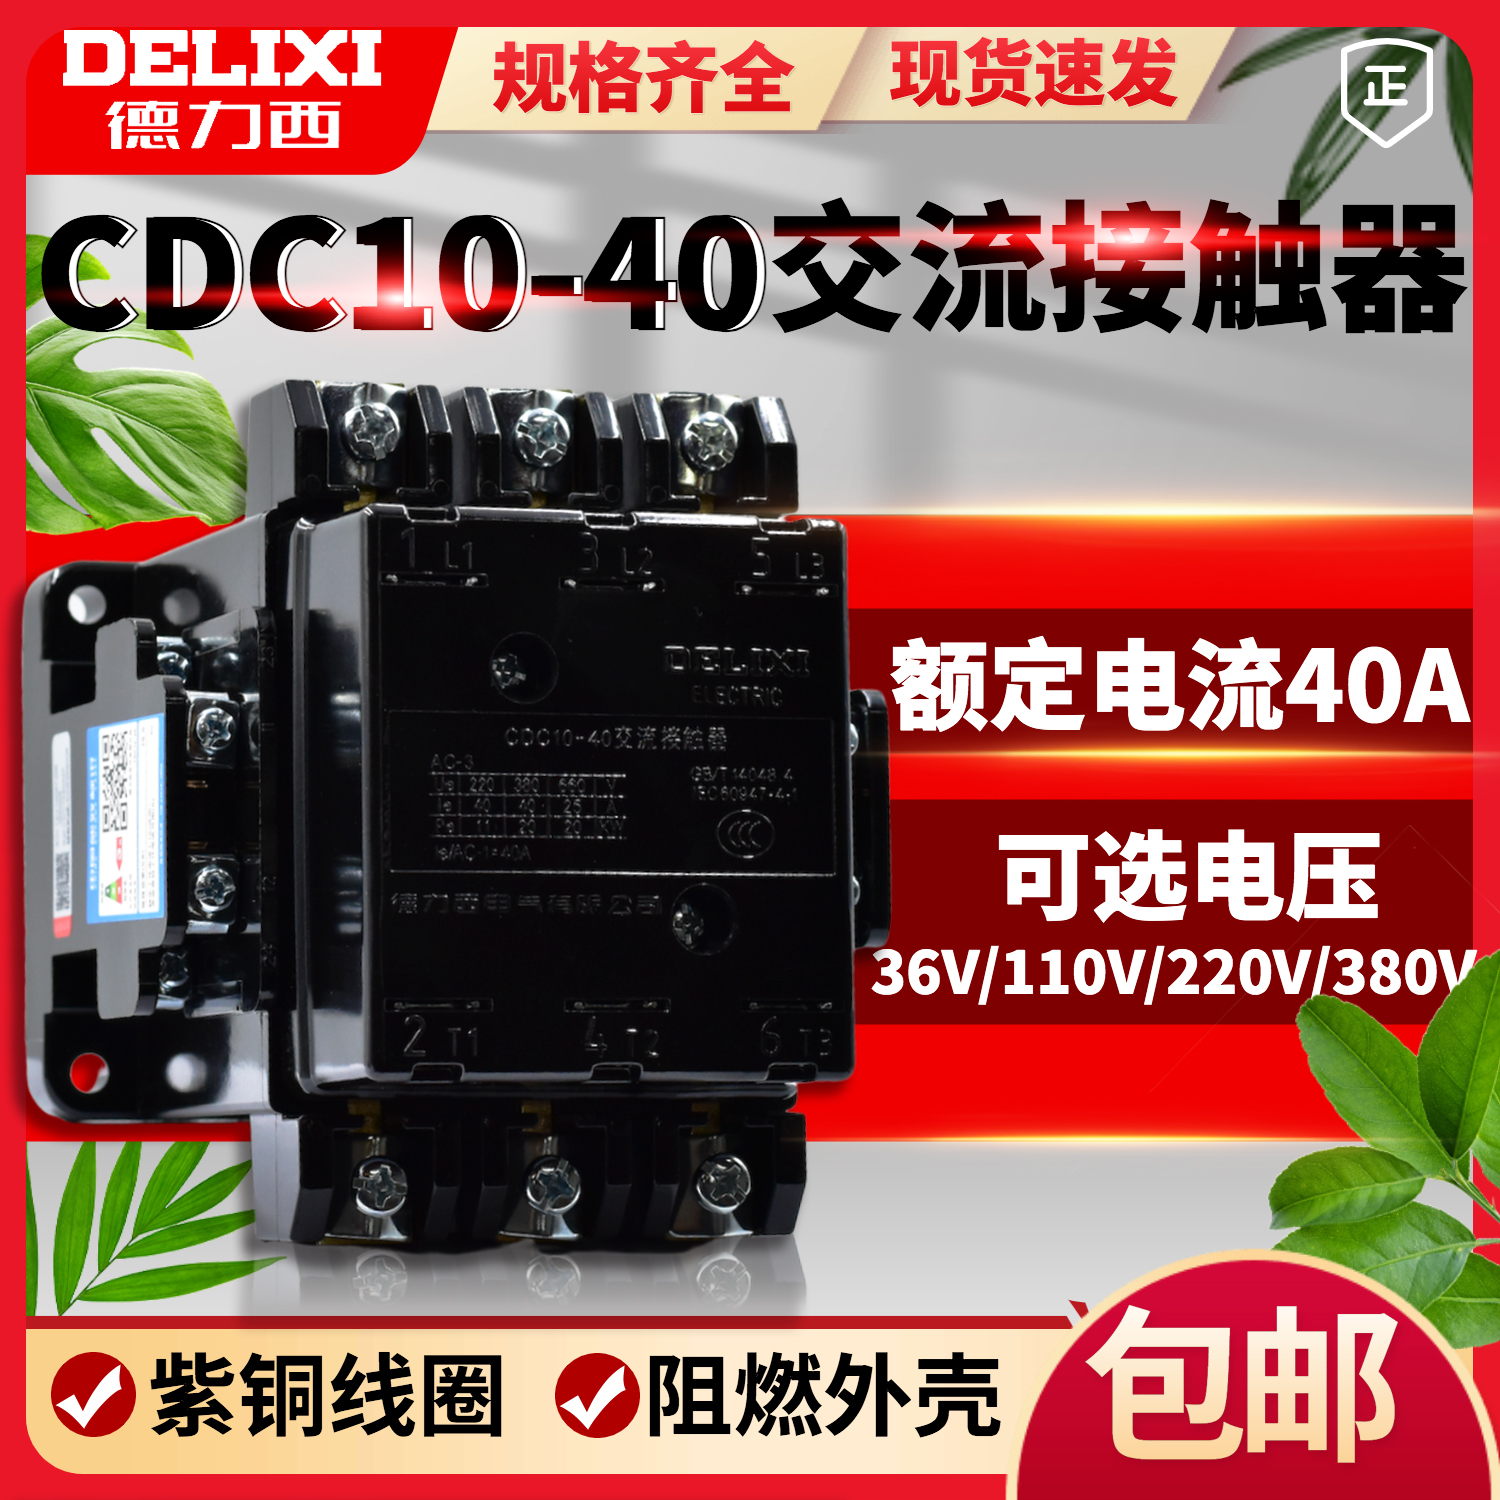 DELIXI CDC10-40 CJT1-40 40A 380V 220V 36V-